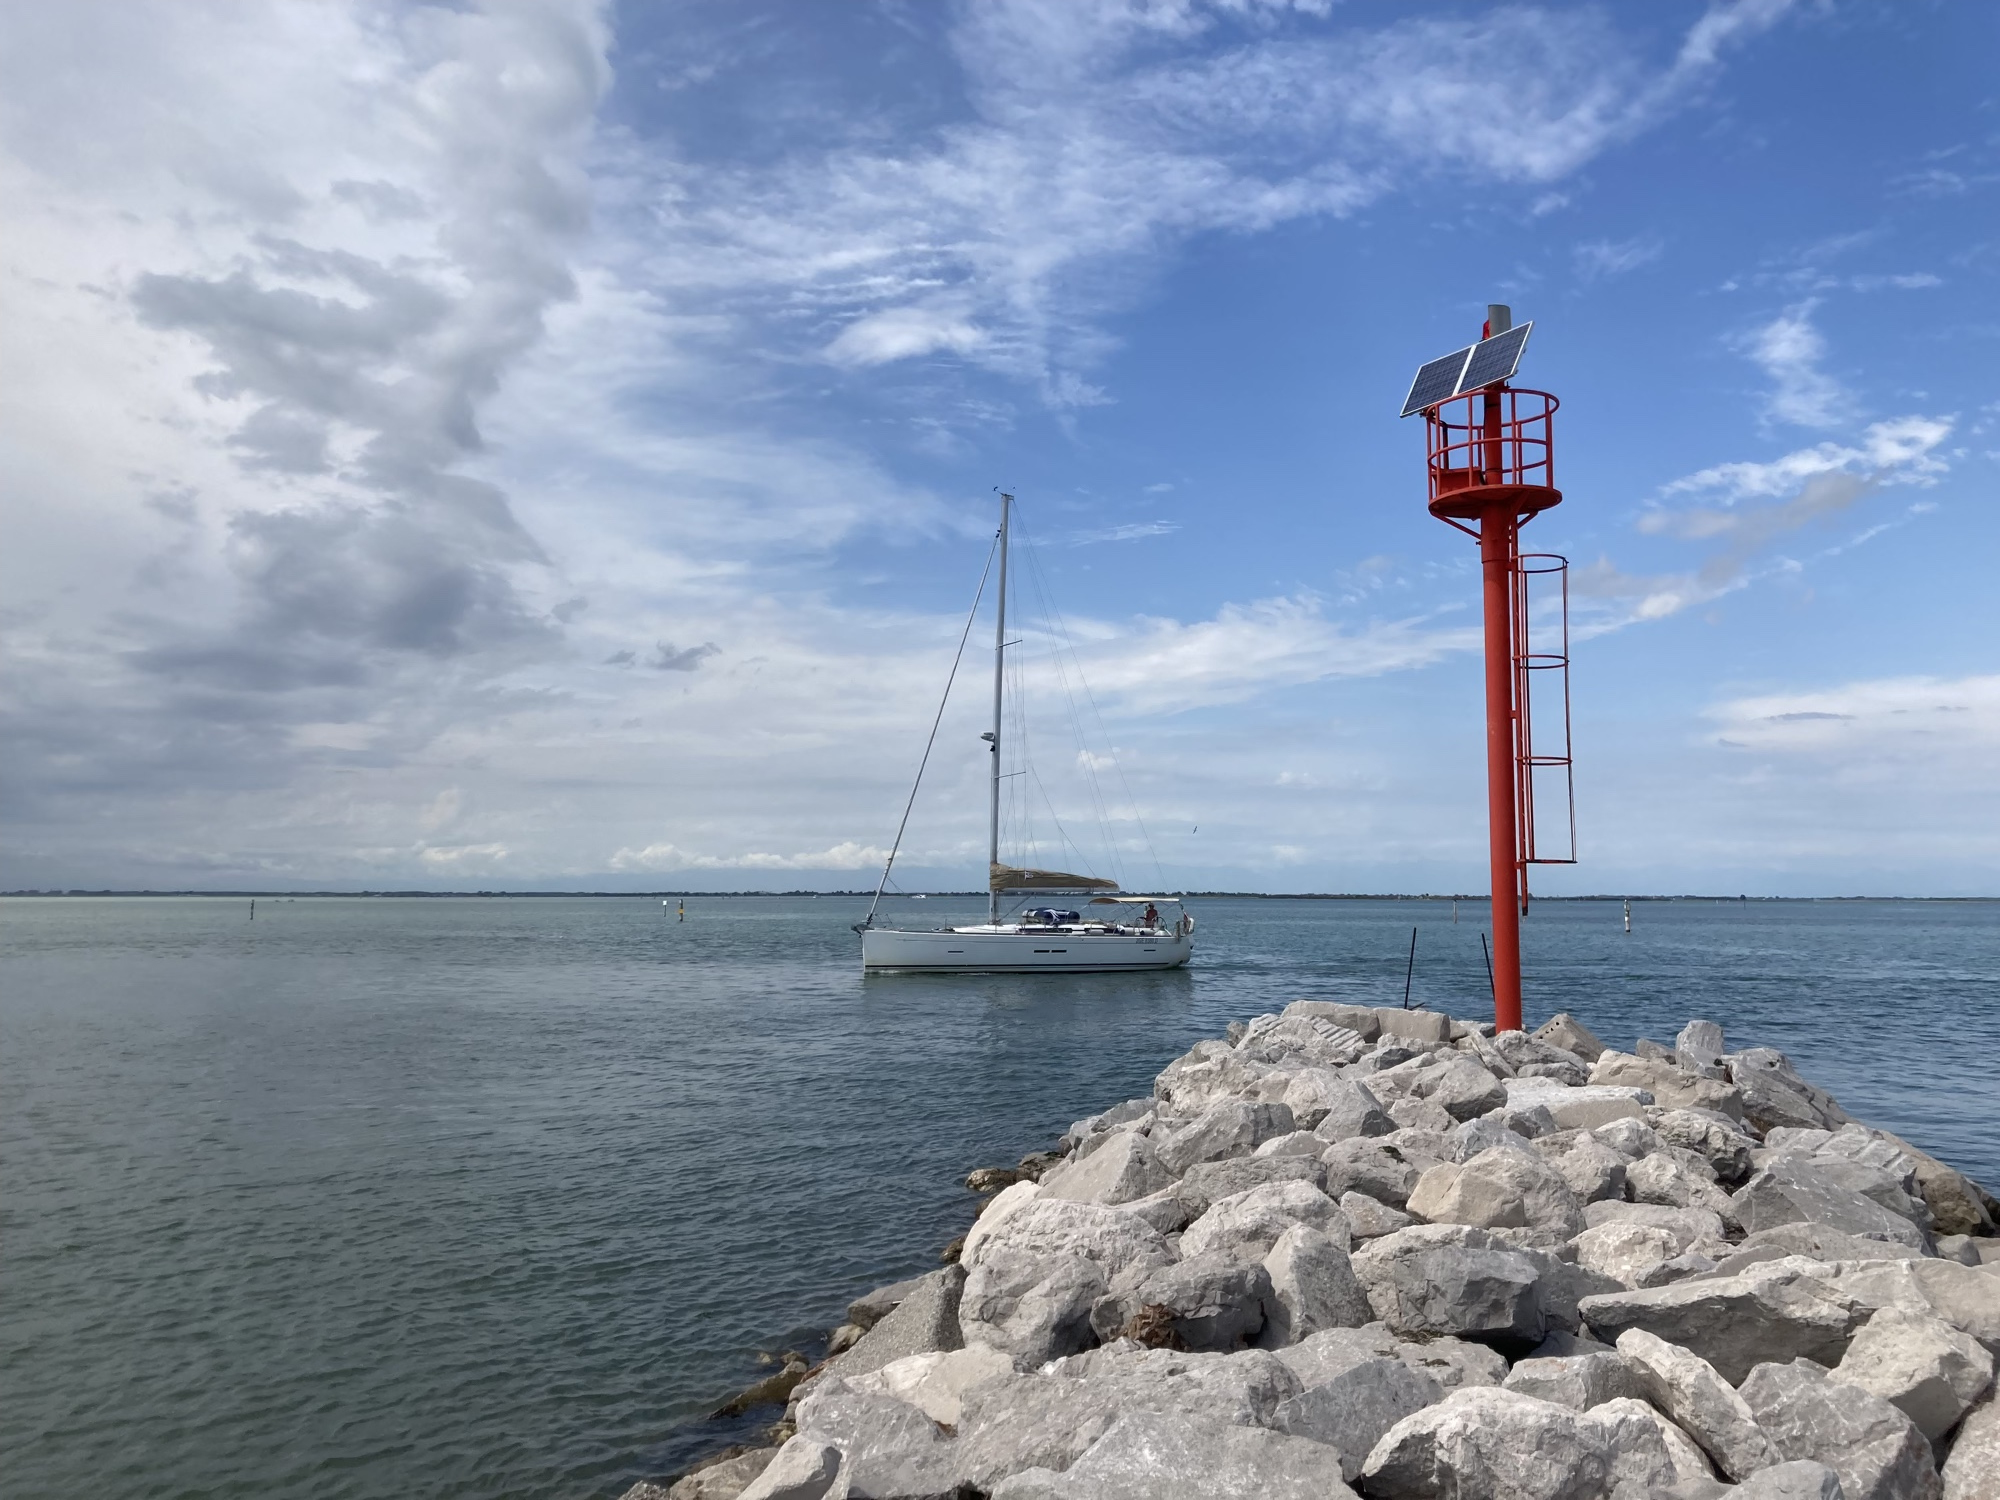 der nördlichste Punkt von Lignano, ein rot gestrichener Turm, gekrönt mit einer Solaranlage auf einer Landzunge aus Steinen, dahinter im Meer ein Seegelboot